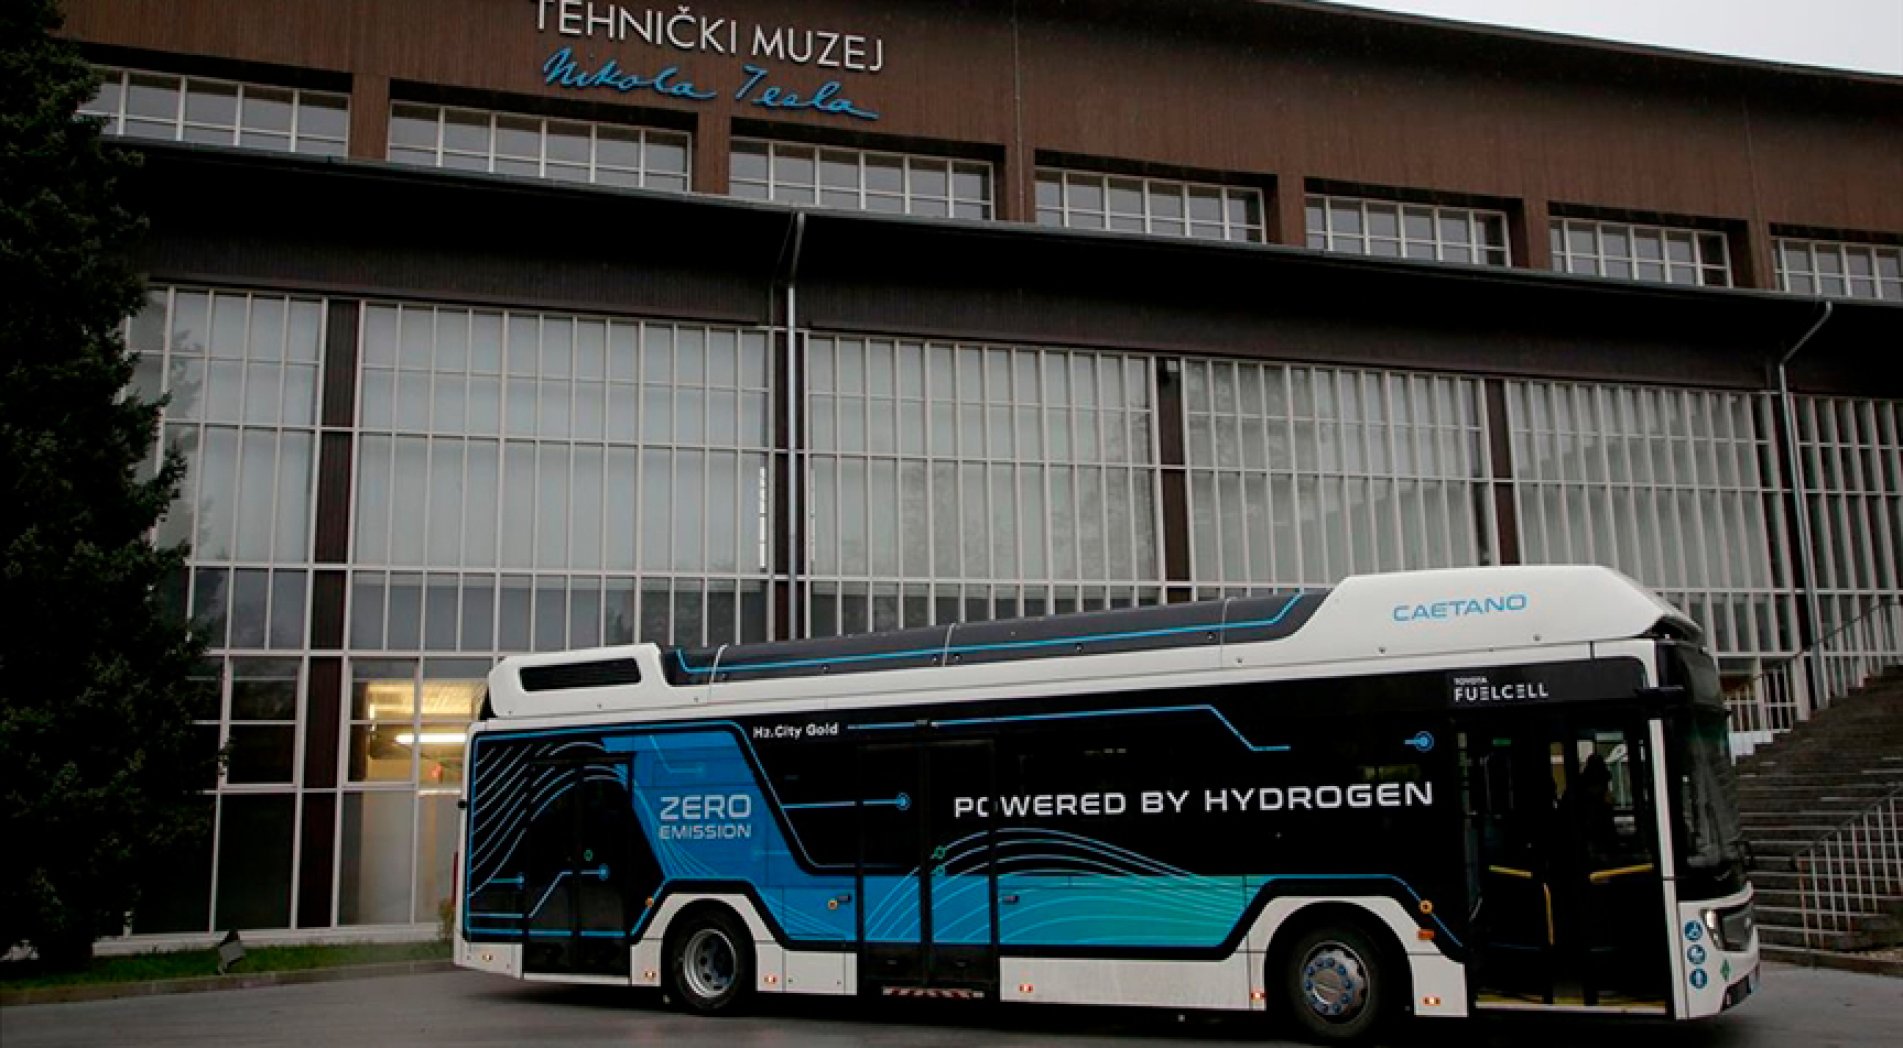 Hırvatistan'da hidrojen yakıtlı otobüs tanıtımı